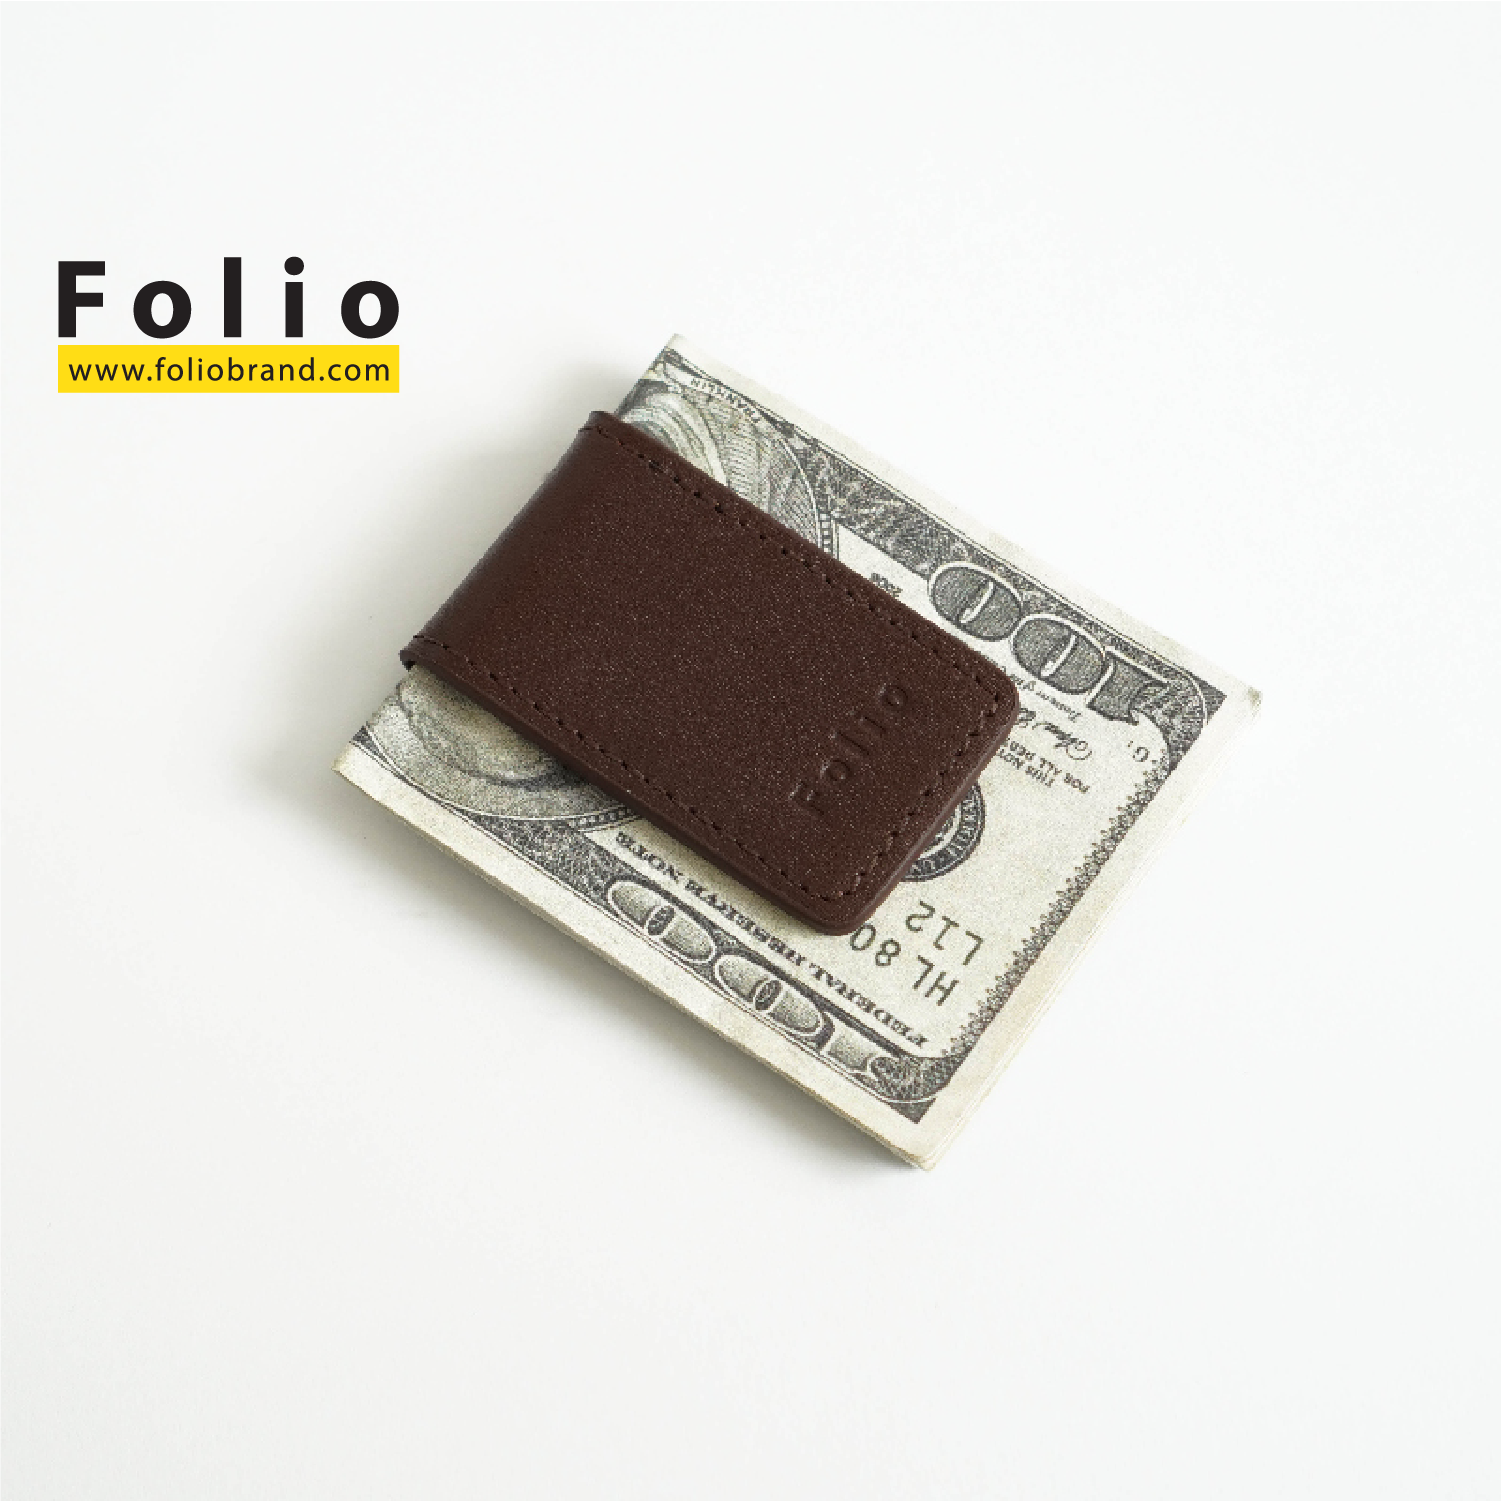 FOLIO รุ่น Money Clip - ที่หนีบธนบัตรหนังแท้ รุ่น Tuff หนังสัมผัสแข็งแรง พกพาสะดวก บริการปั้มชื่อฟรี